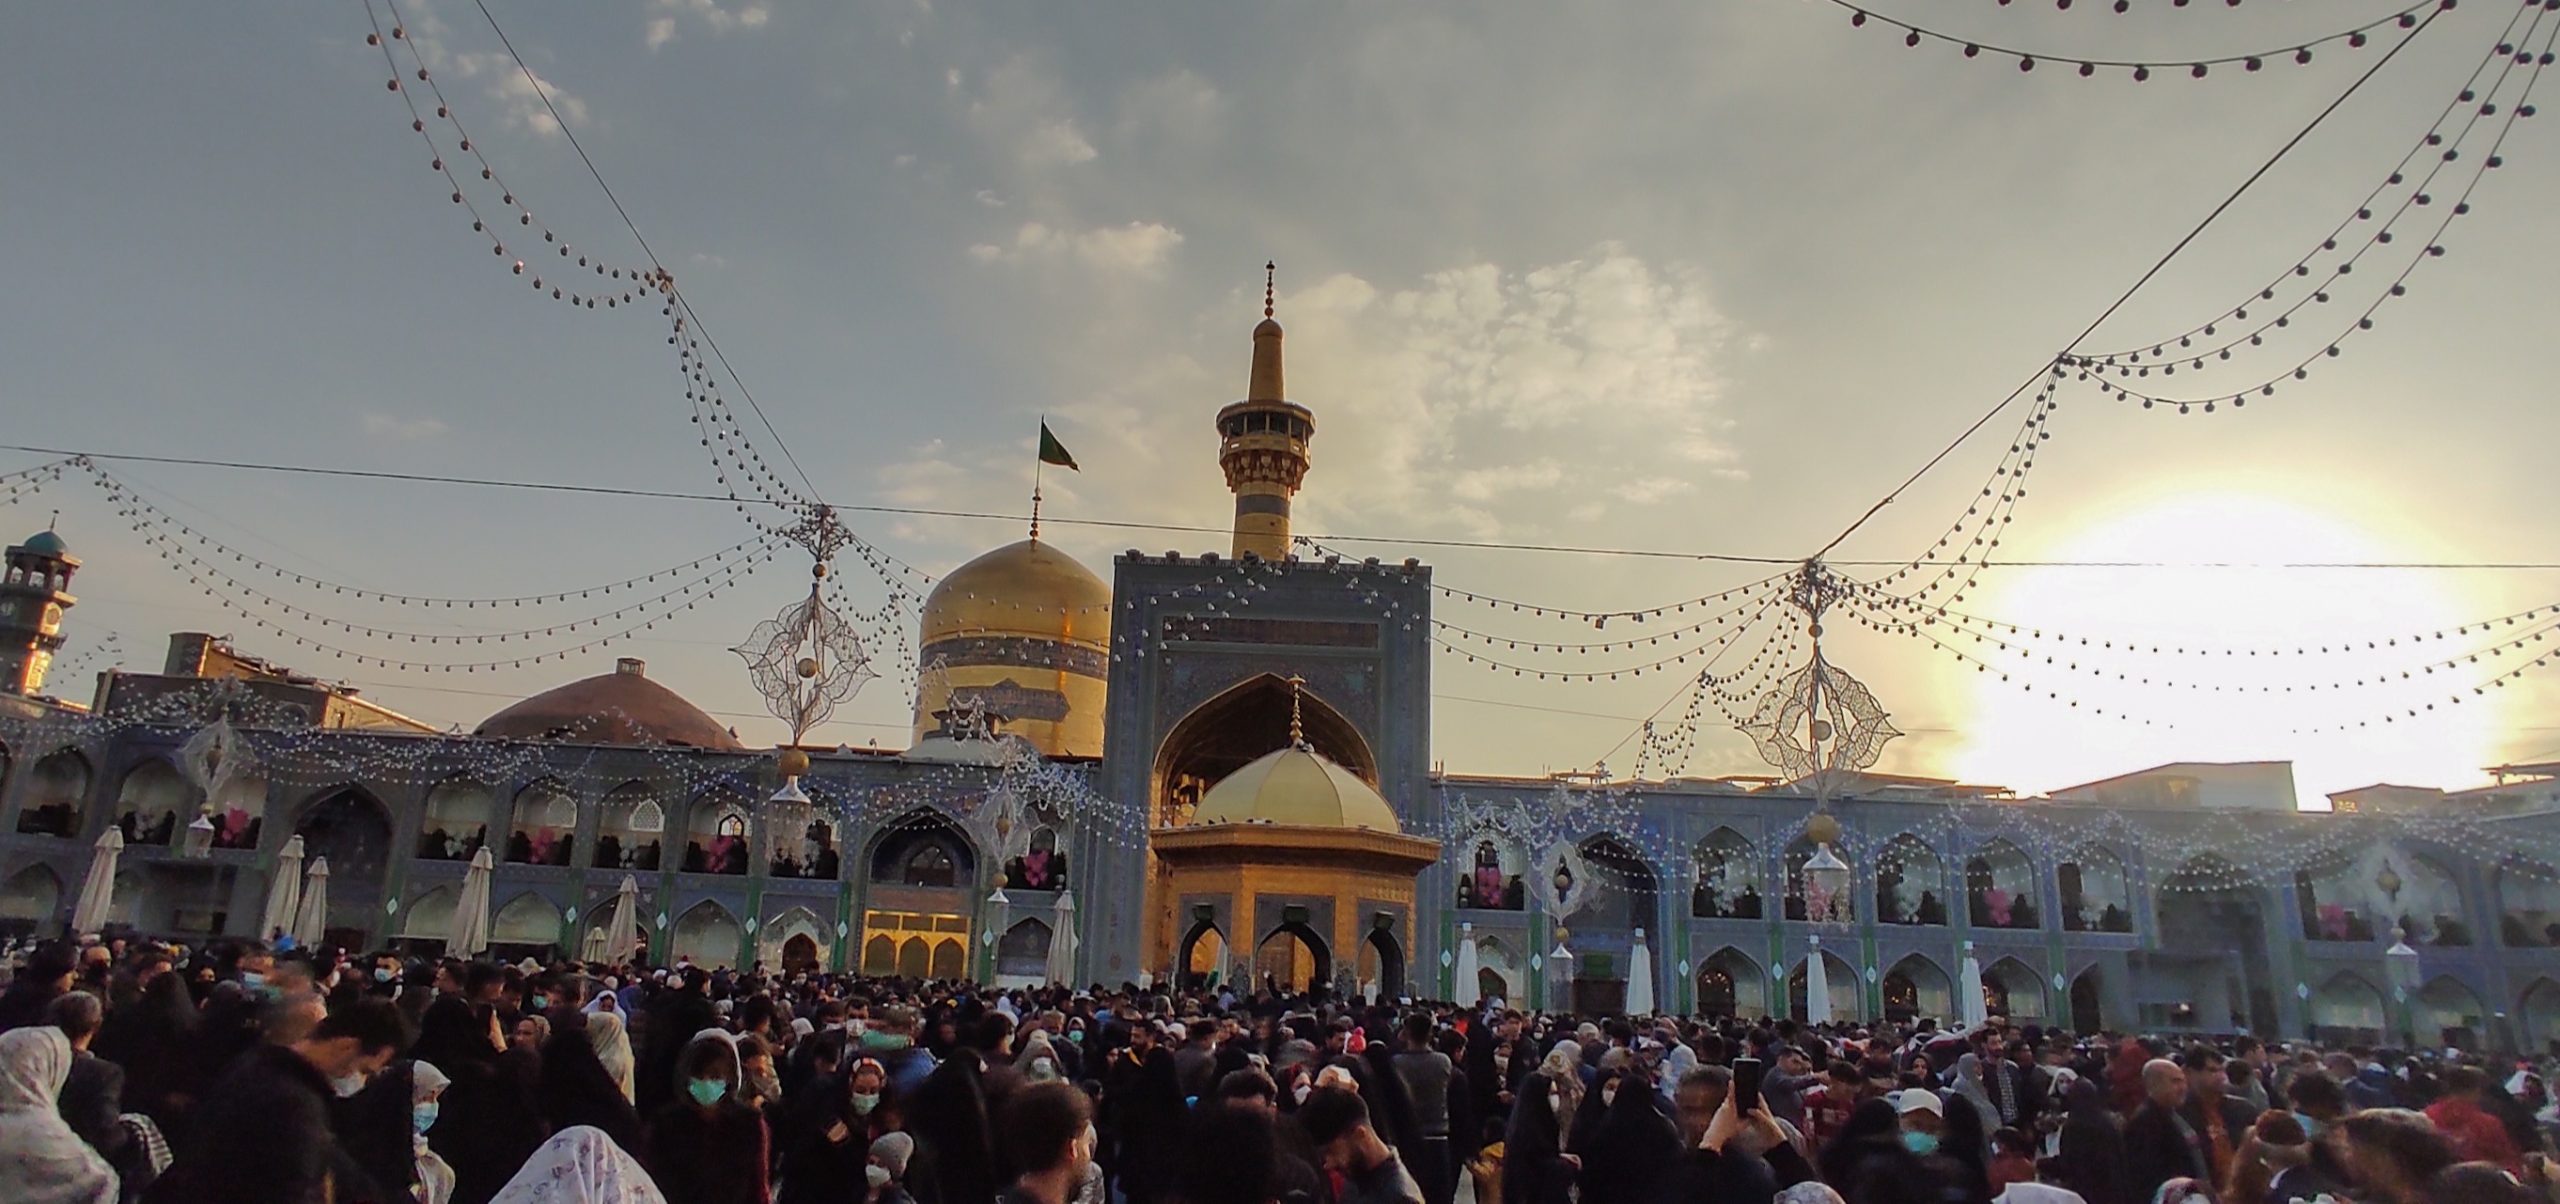 مشهد - بهترین مقاصد سفر در عید